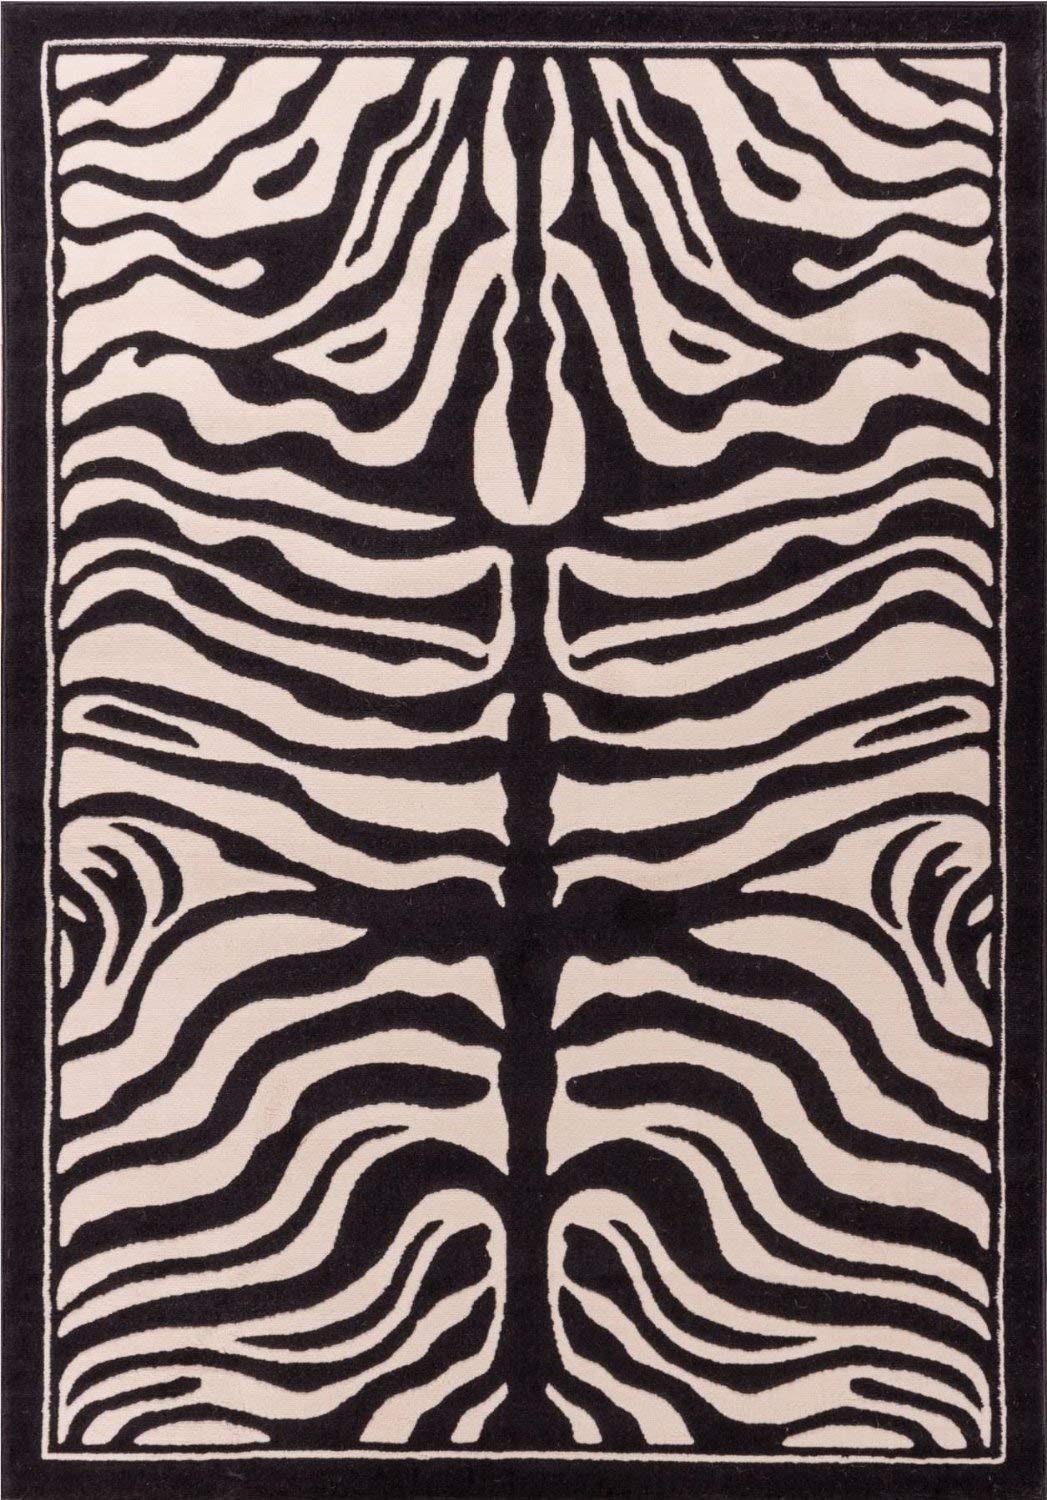 zebra rug amazon.com: zebra print rug contemporary area rugs 5x8 zebra rugs large 5x7 zebra UPVBZCY